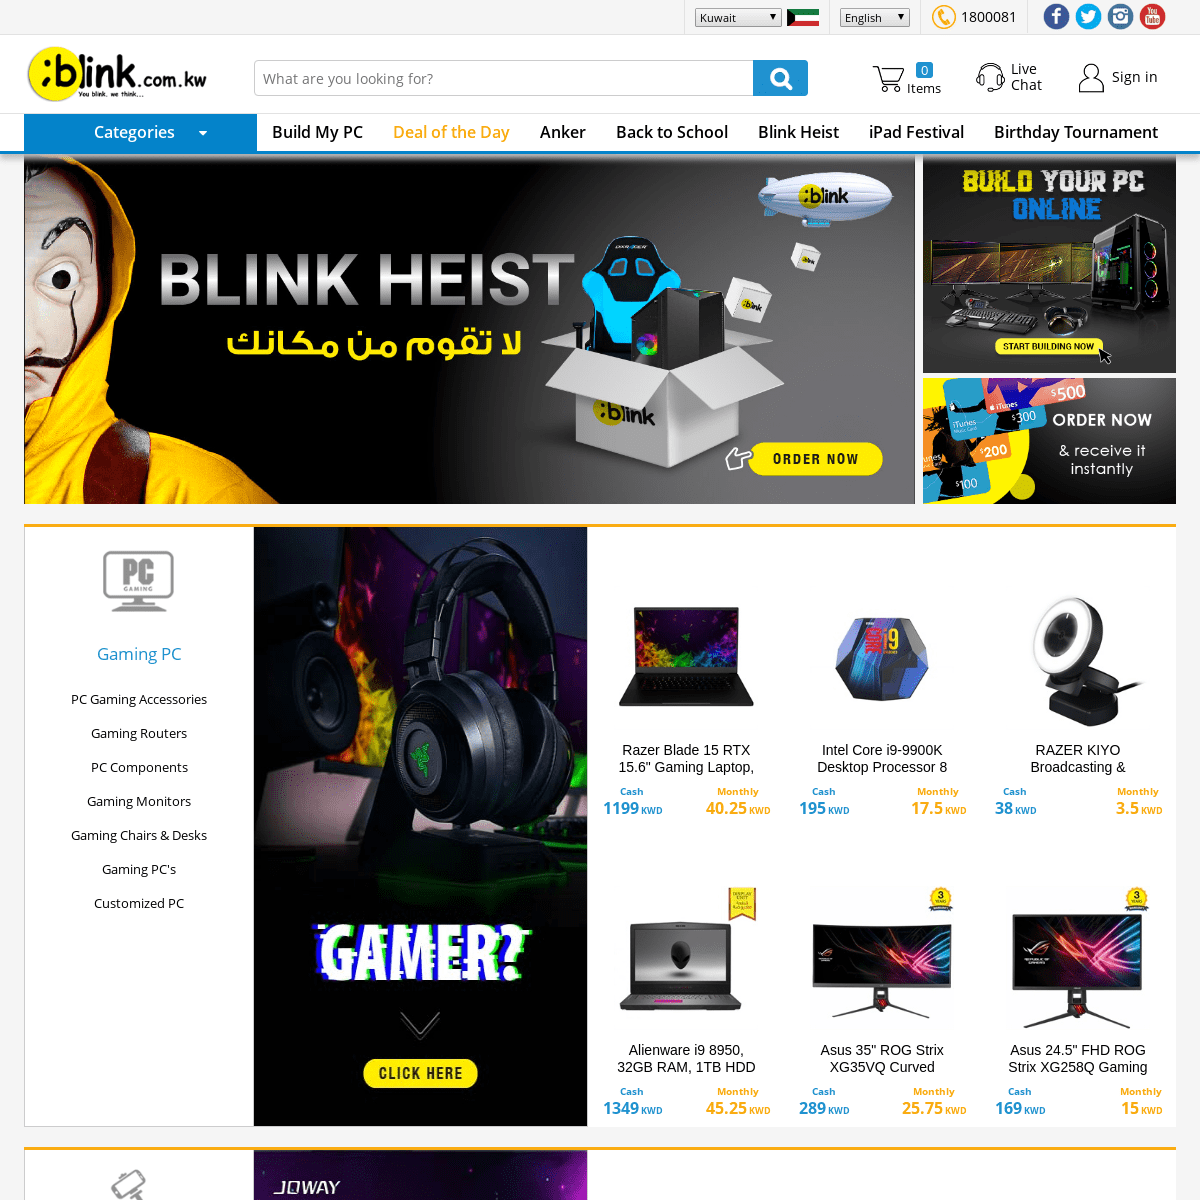 A complete backup of blink.com.kw